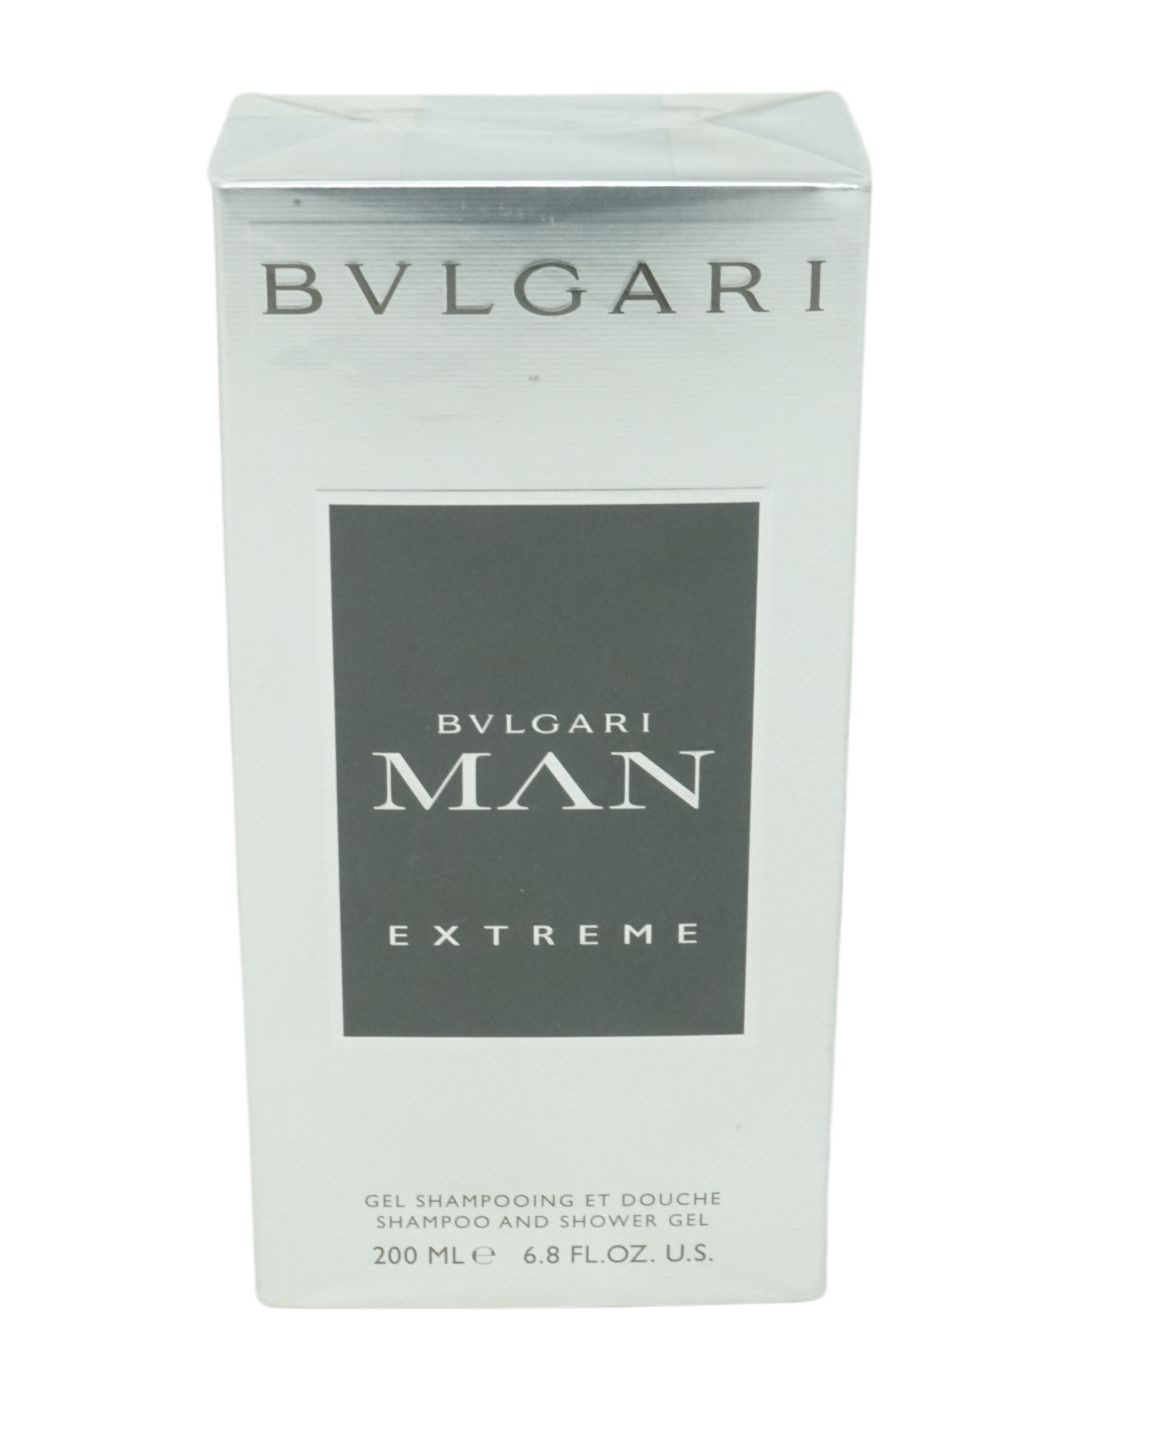 and Bvlgari Man Shower Extreme 200ml Duschgel BVLGARI Shampoo Gel